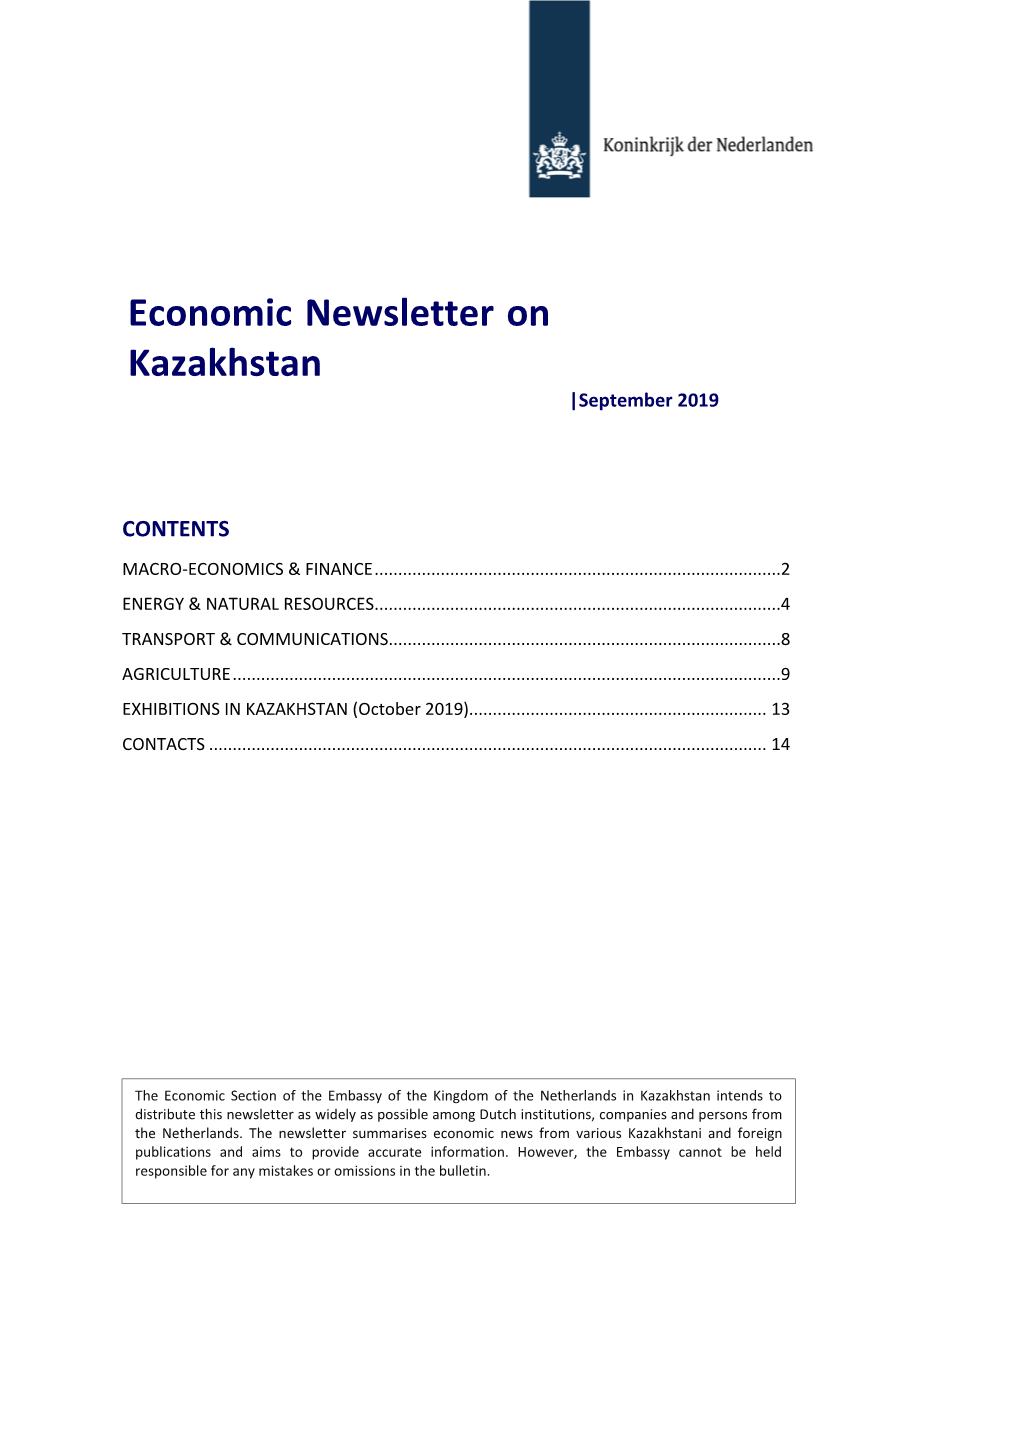 Economic Newsletter on Kazakhstan |September 2019